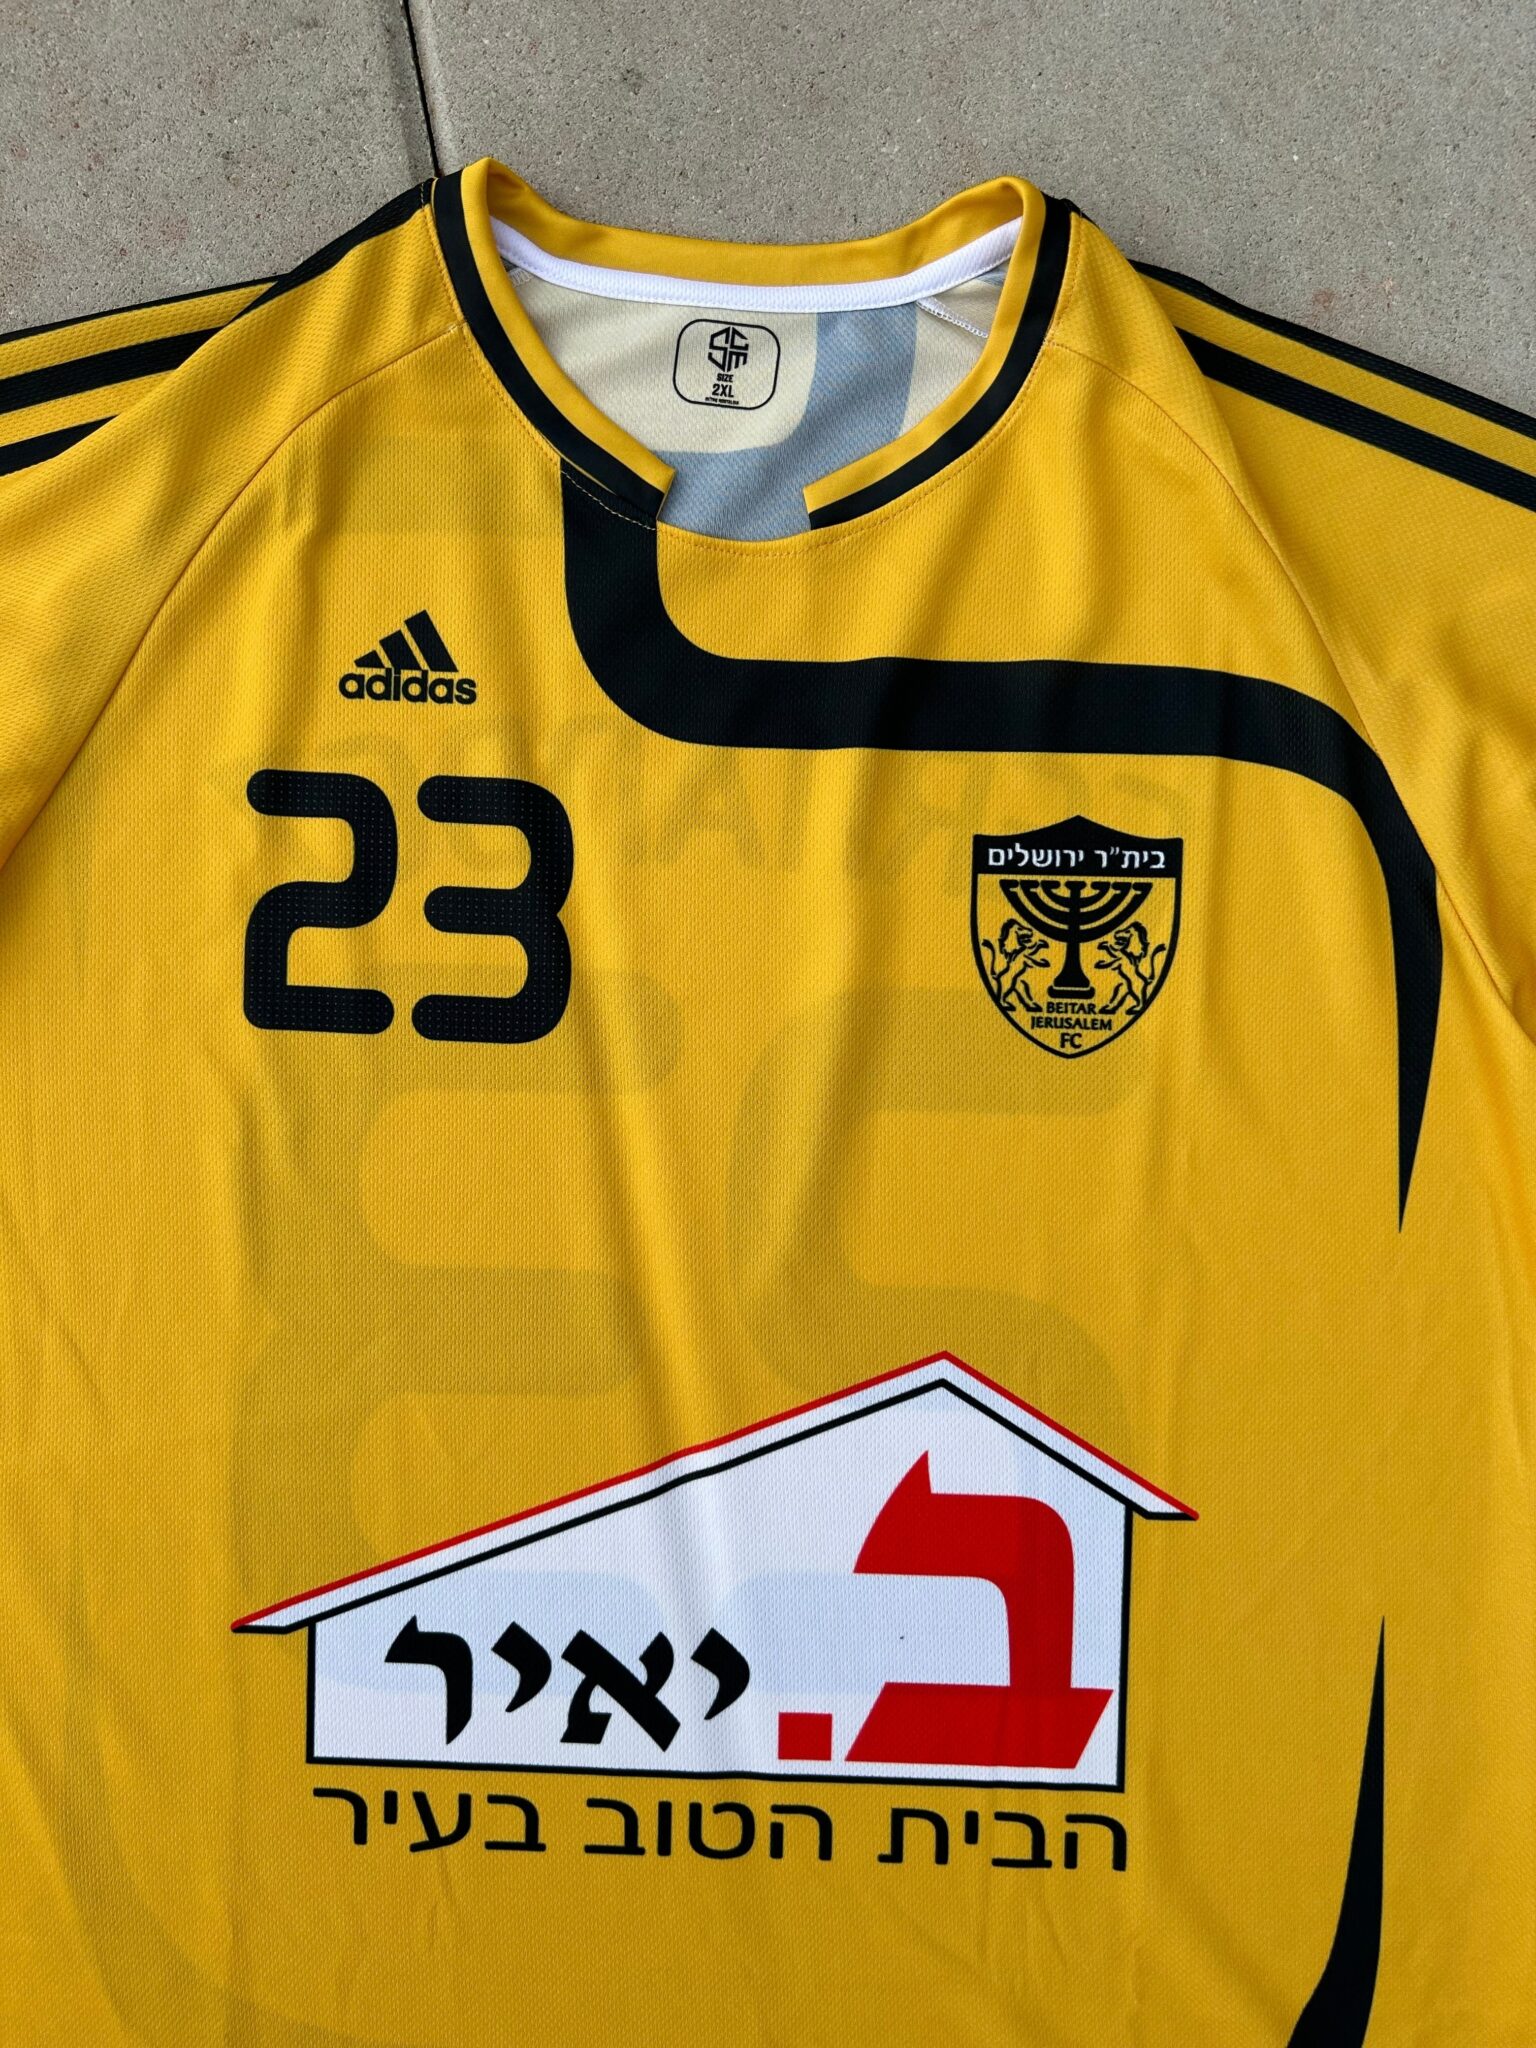 Beitar Jerusalem Football Shirt 2008/2009 Israel Retro Jersey Vintage Soccer Europe ביתר ירושלים - Sport Club Memories